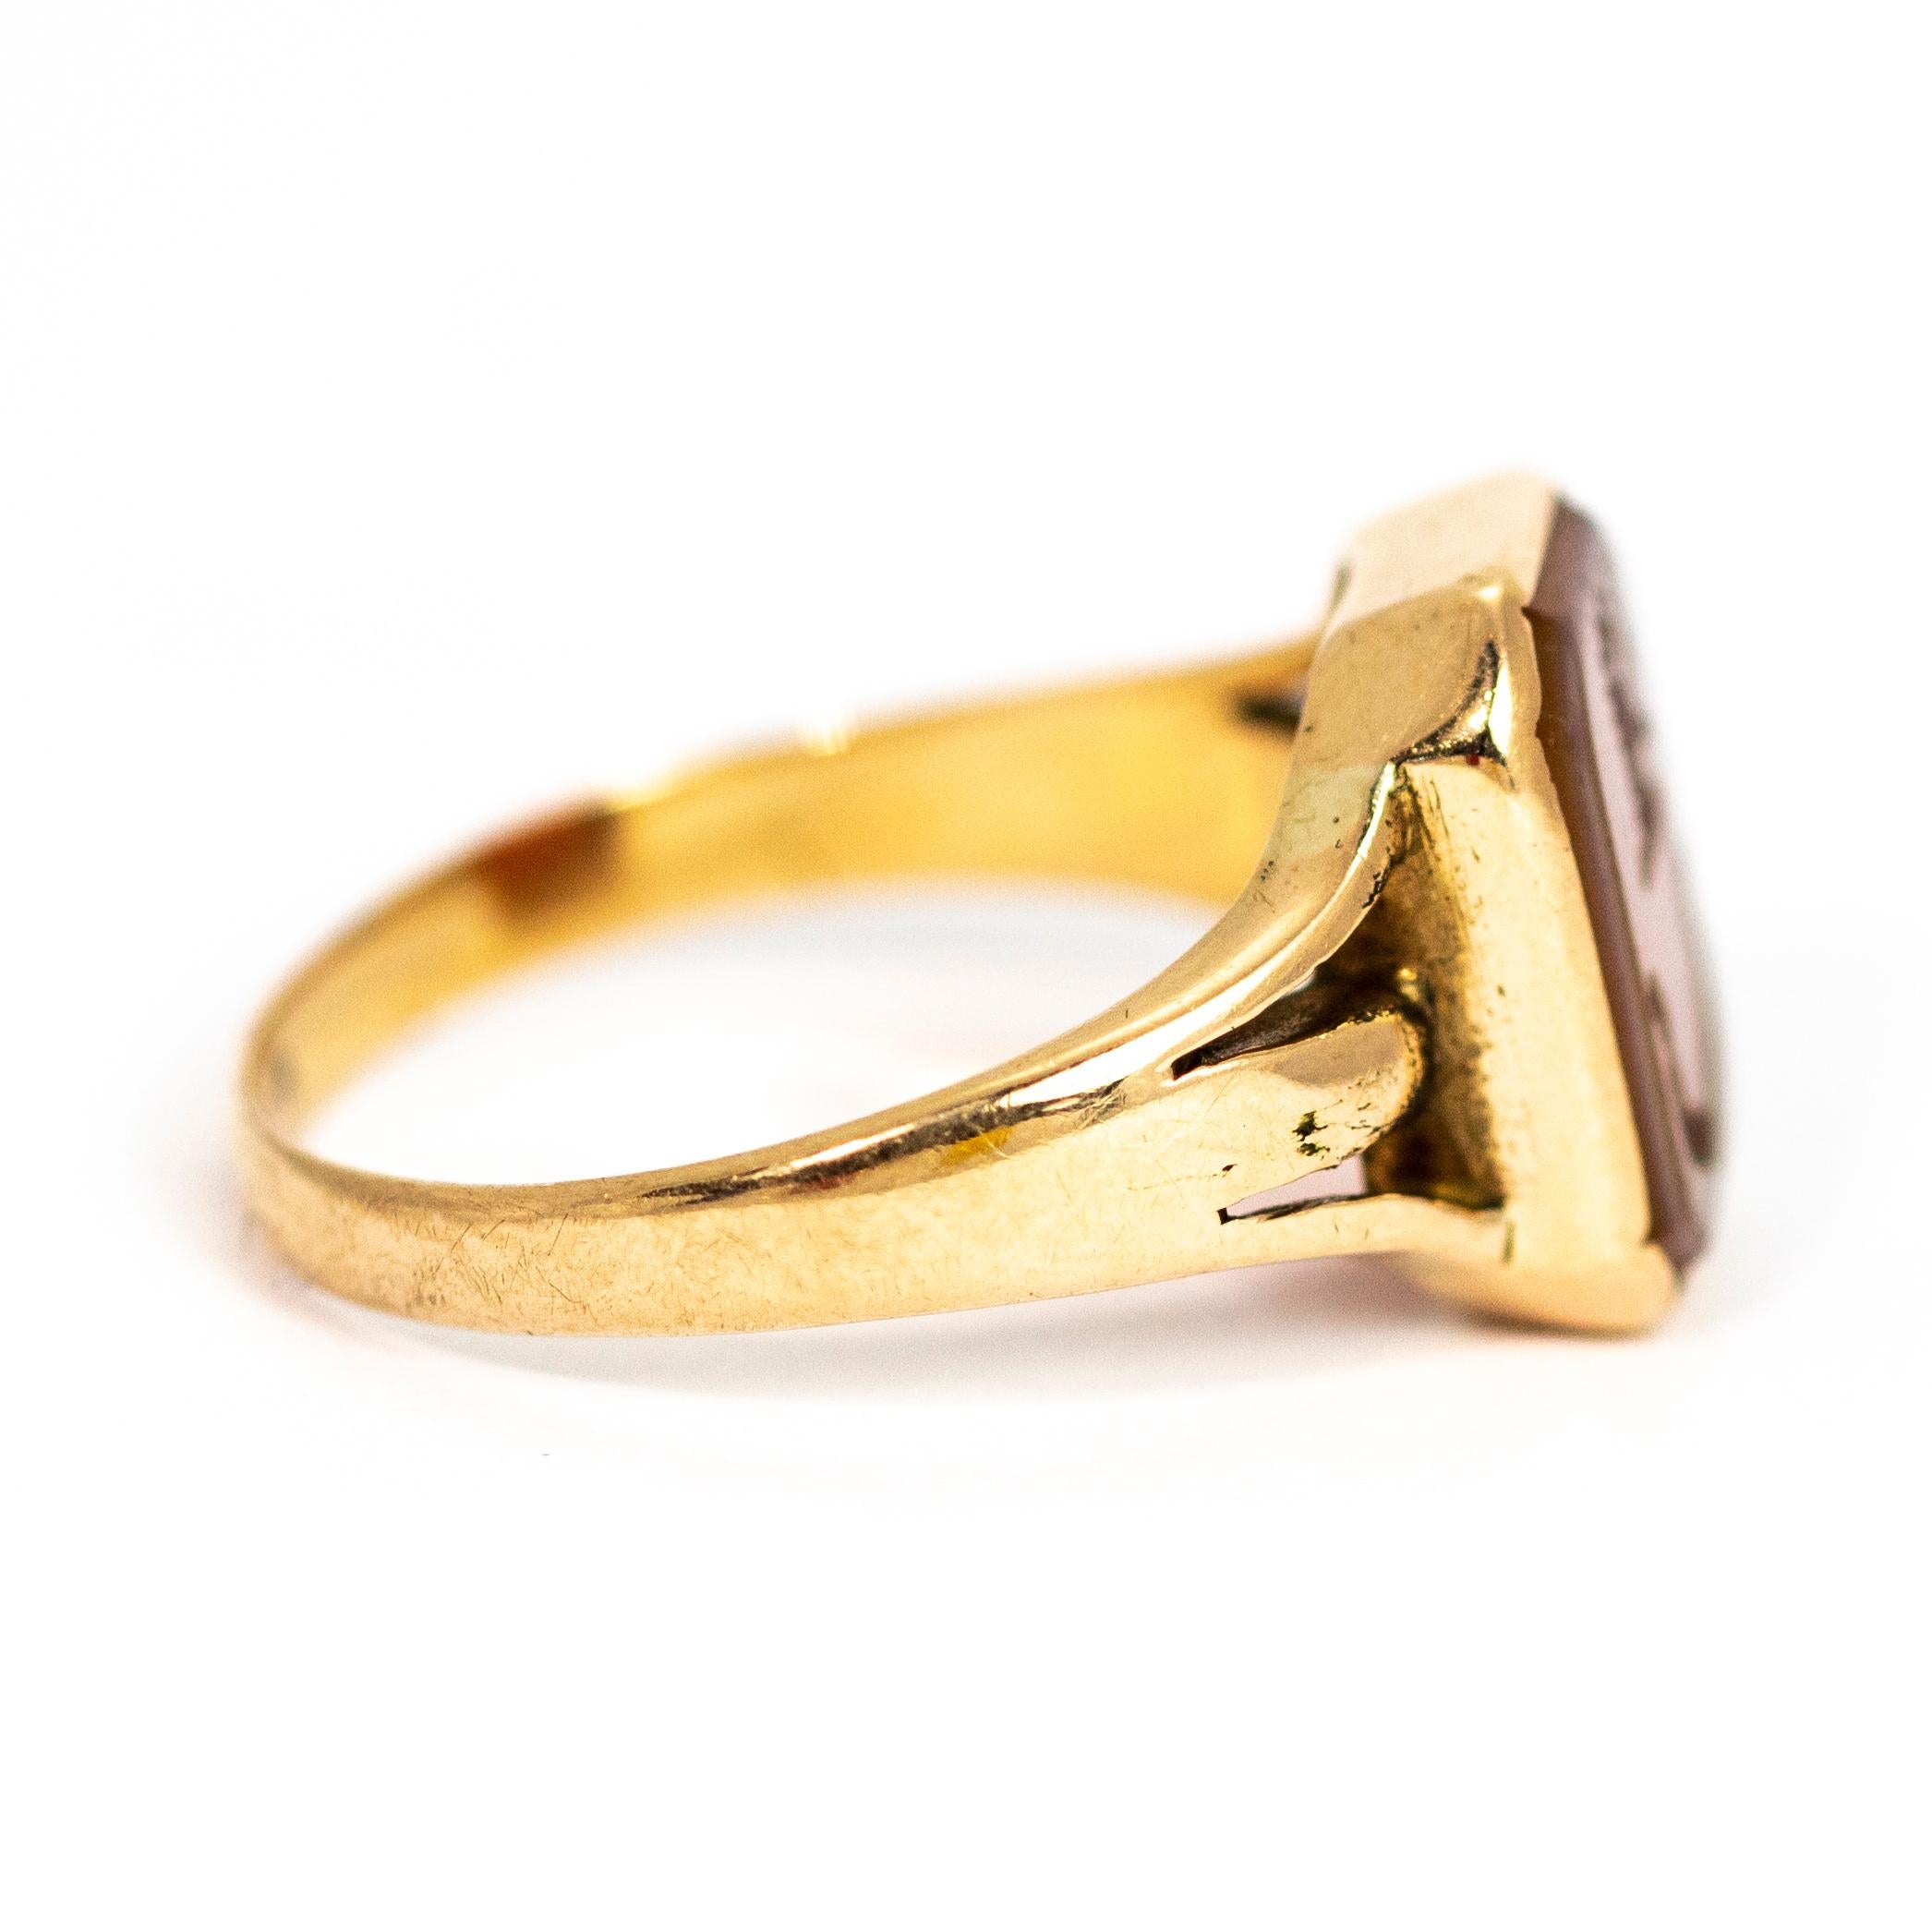 Vintage 18 Carat Gold Carved Intaglio Signet Ring 1